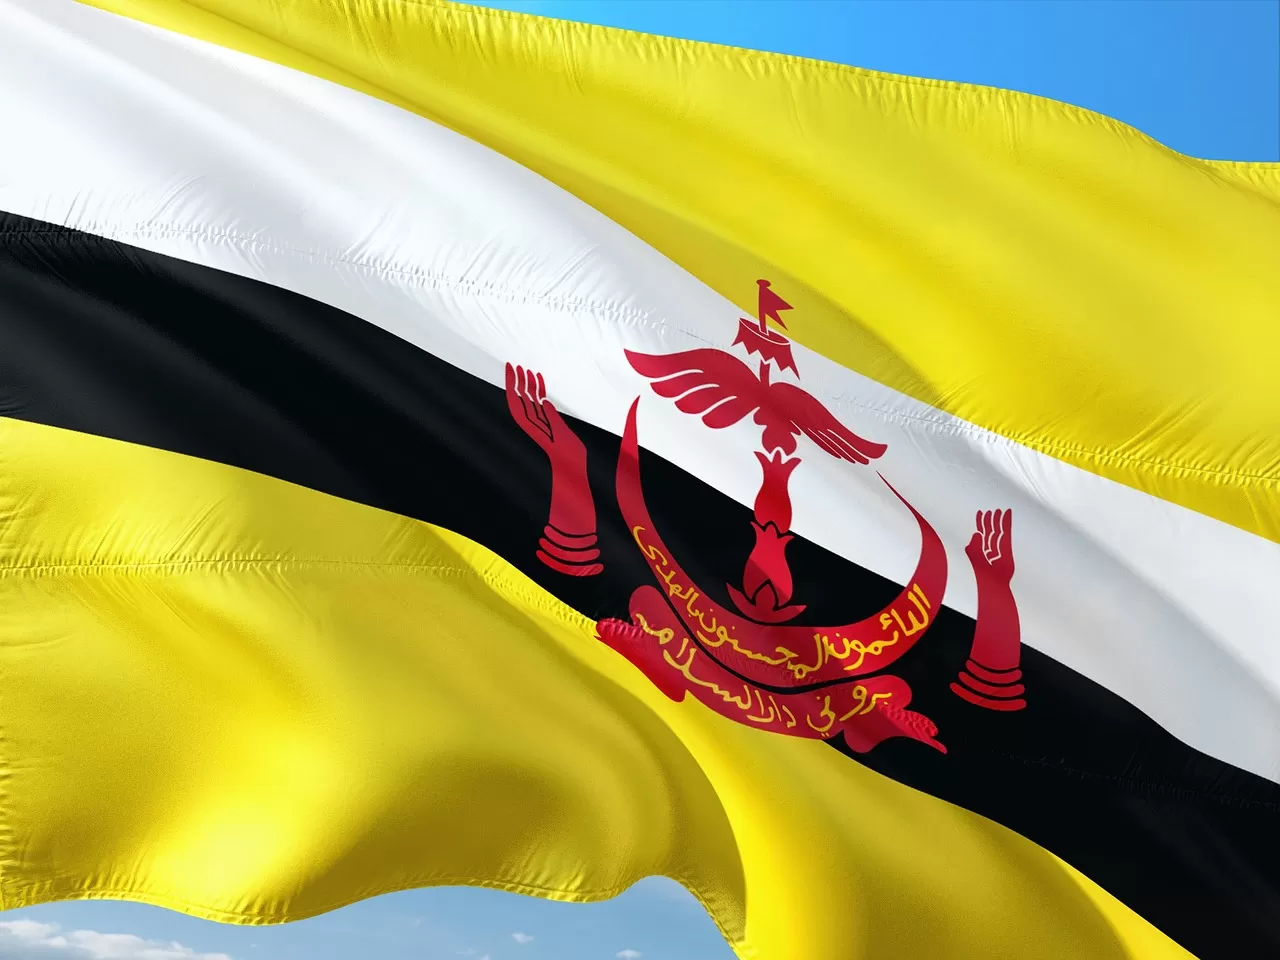 Mau kuliah di kampung halamannya Pangeran Mateen? Beasiswa pemerintah Brunei Darussalam lagi dibuka lho, tunjangannya segini